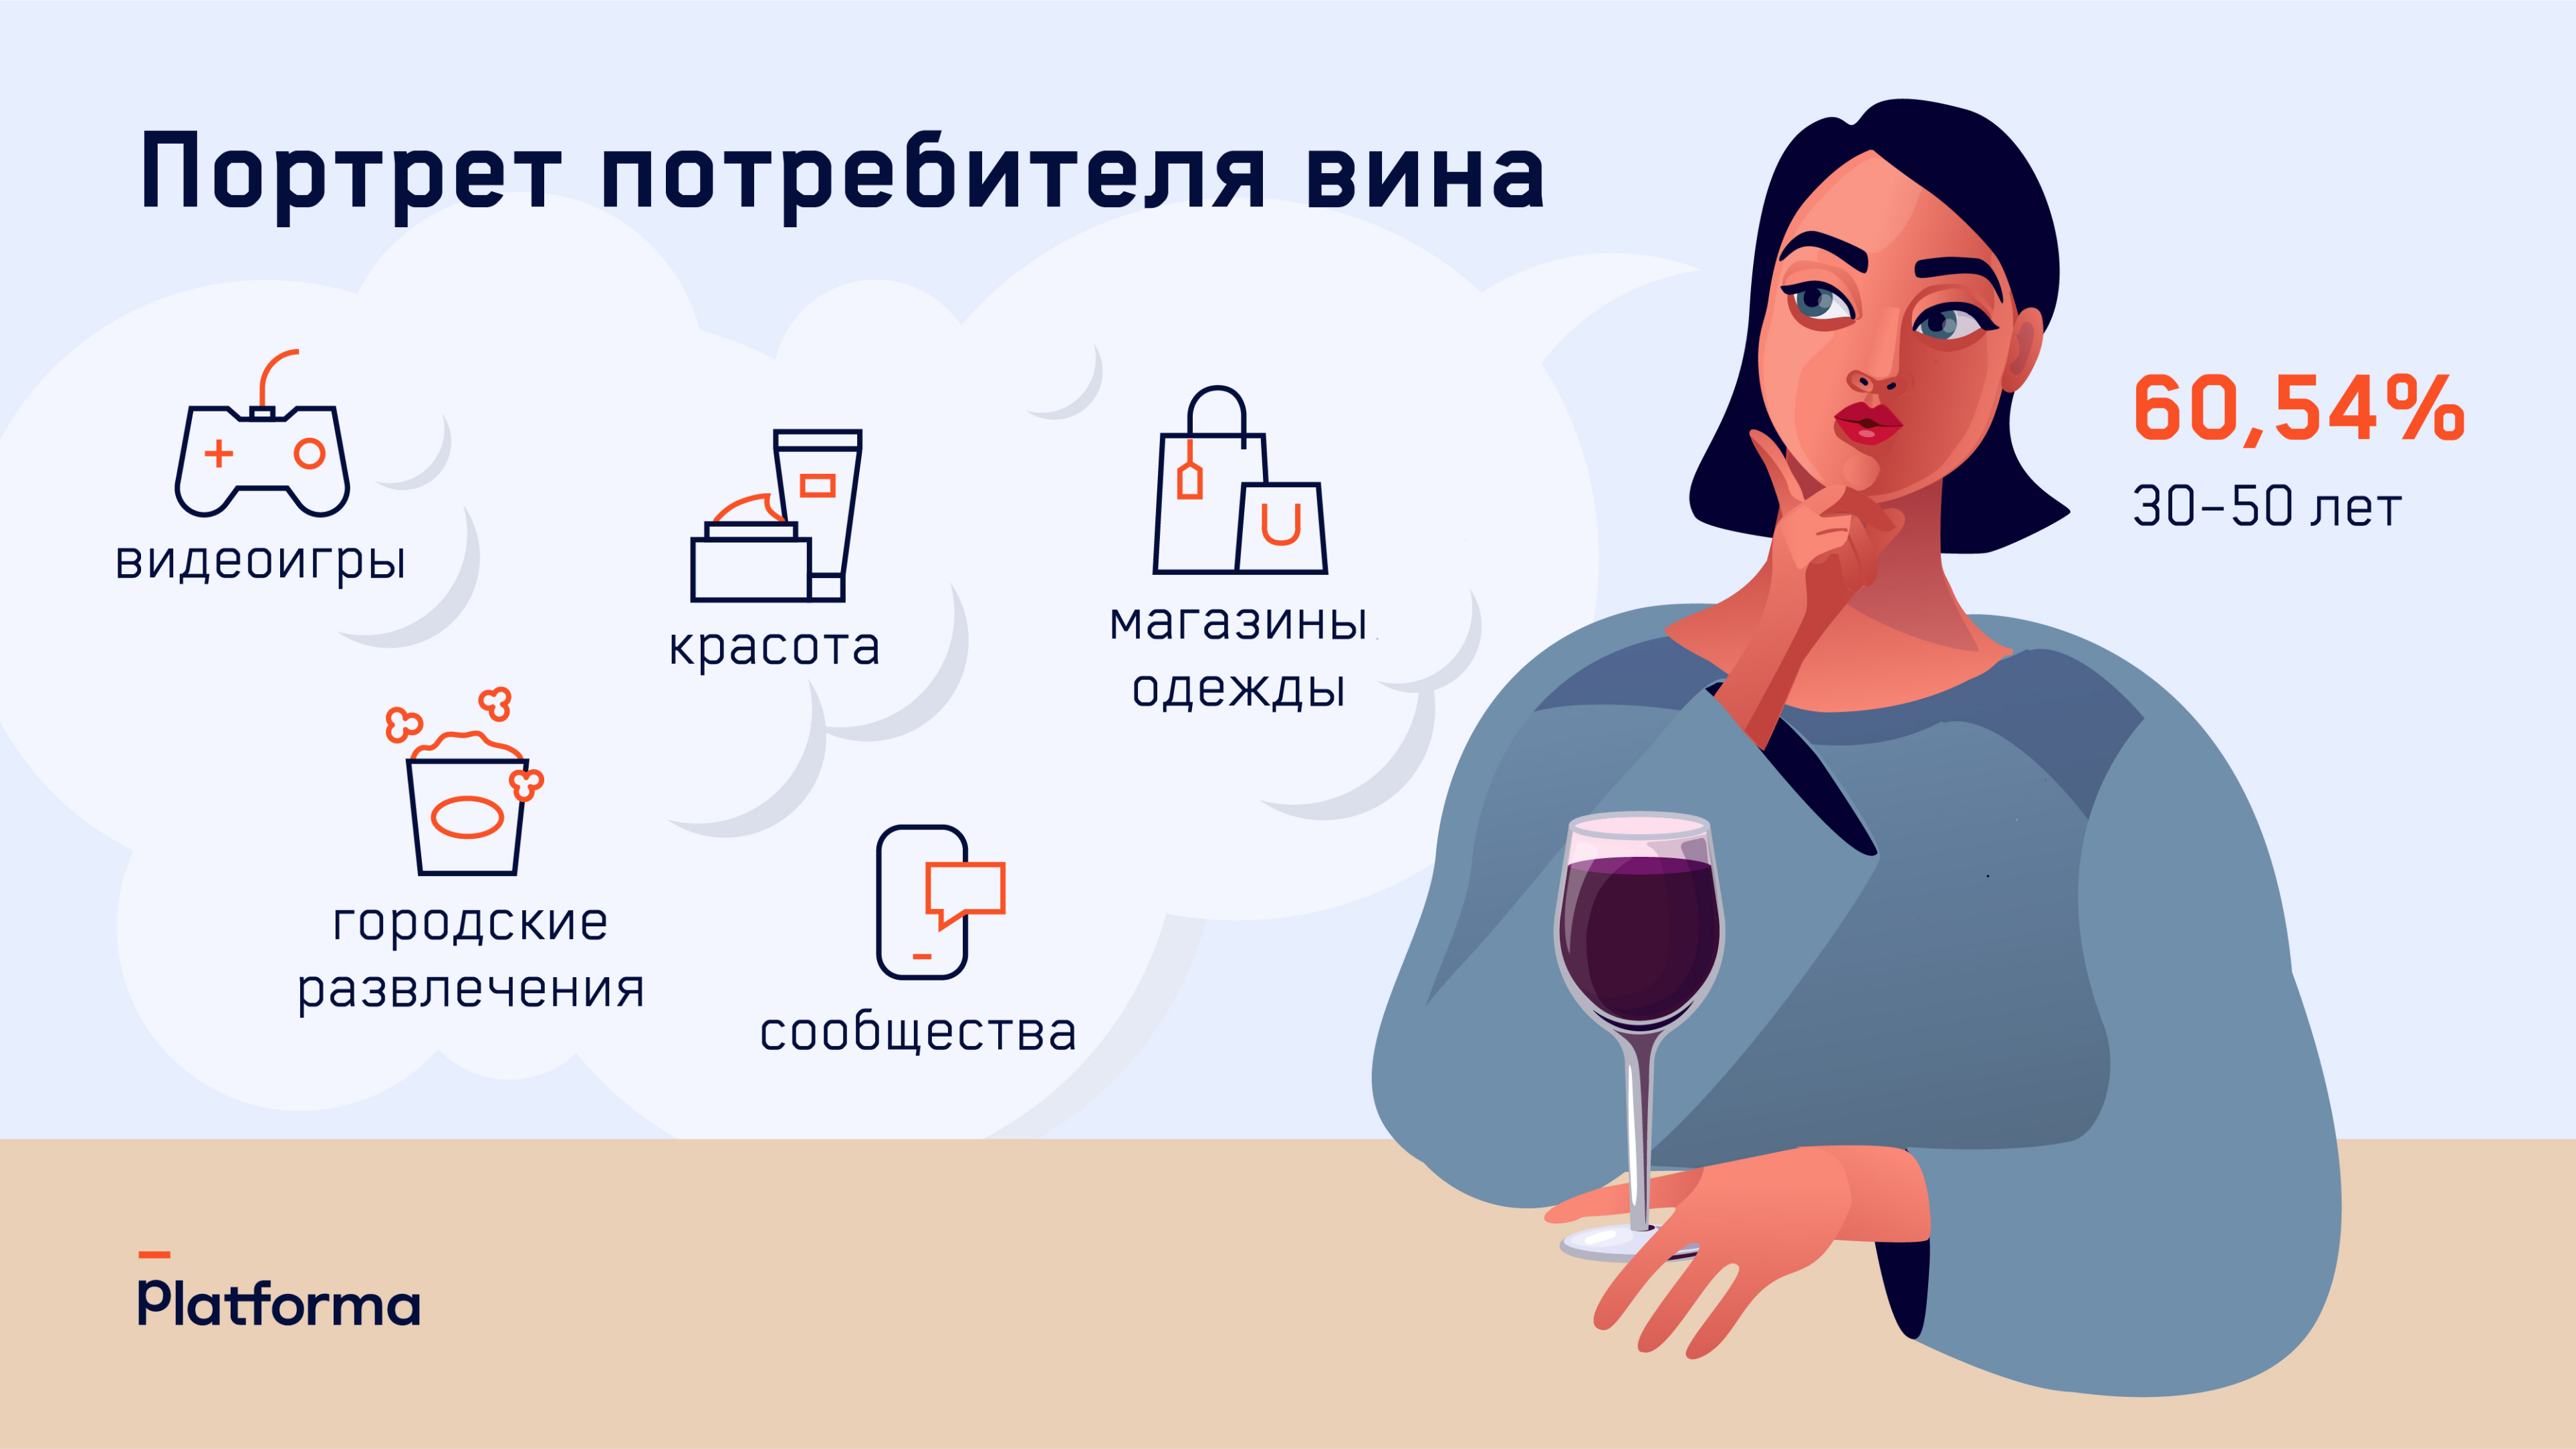 Портрет потребителя вина в России